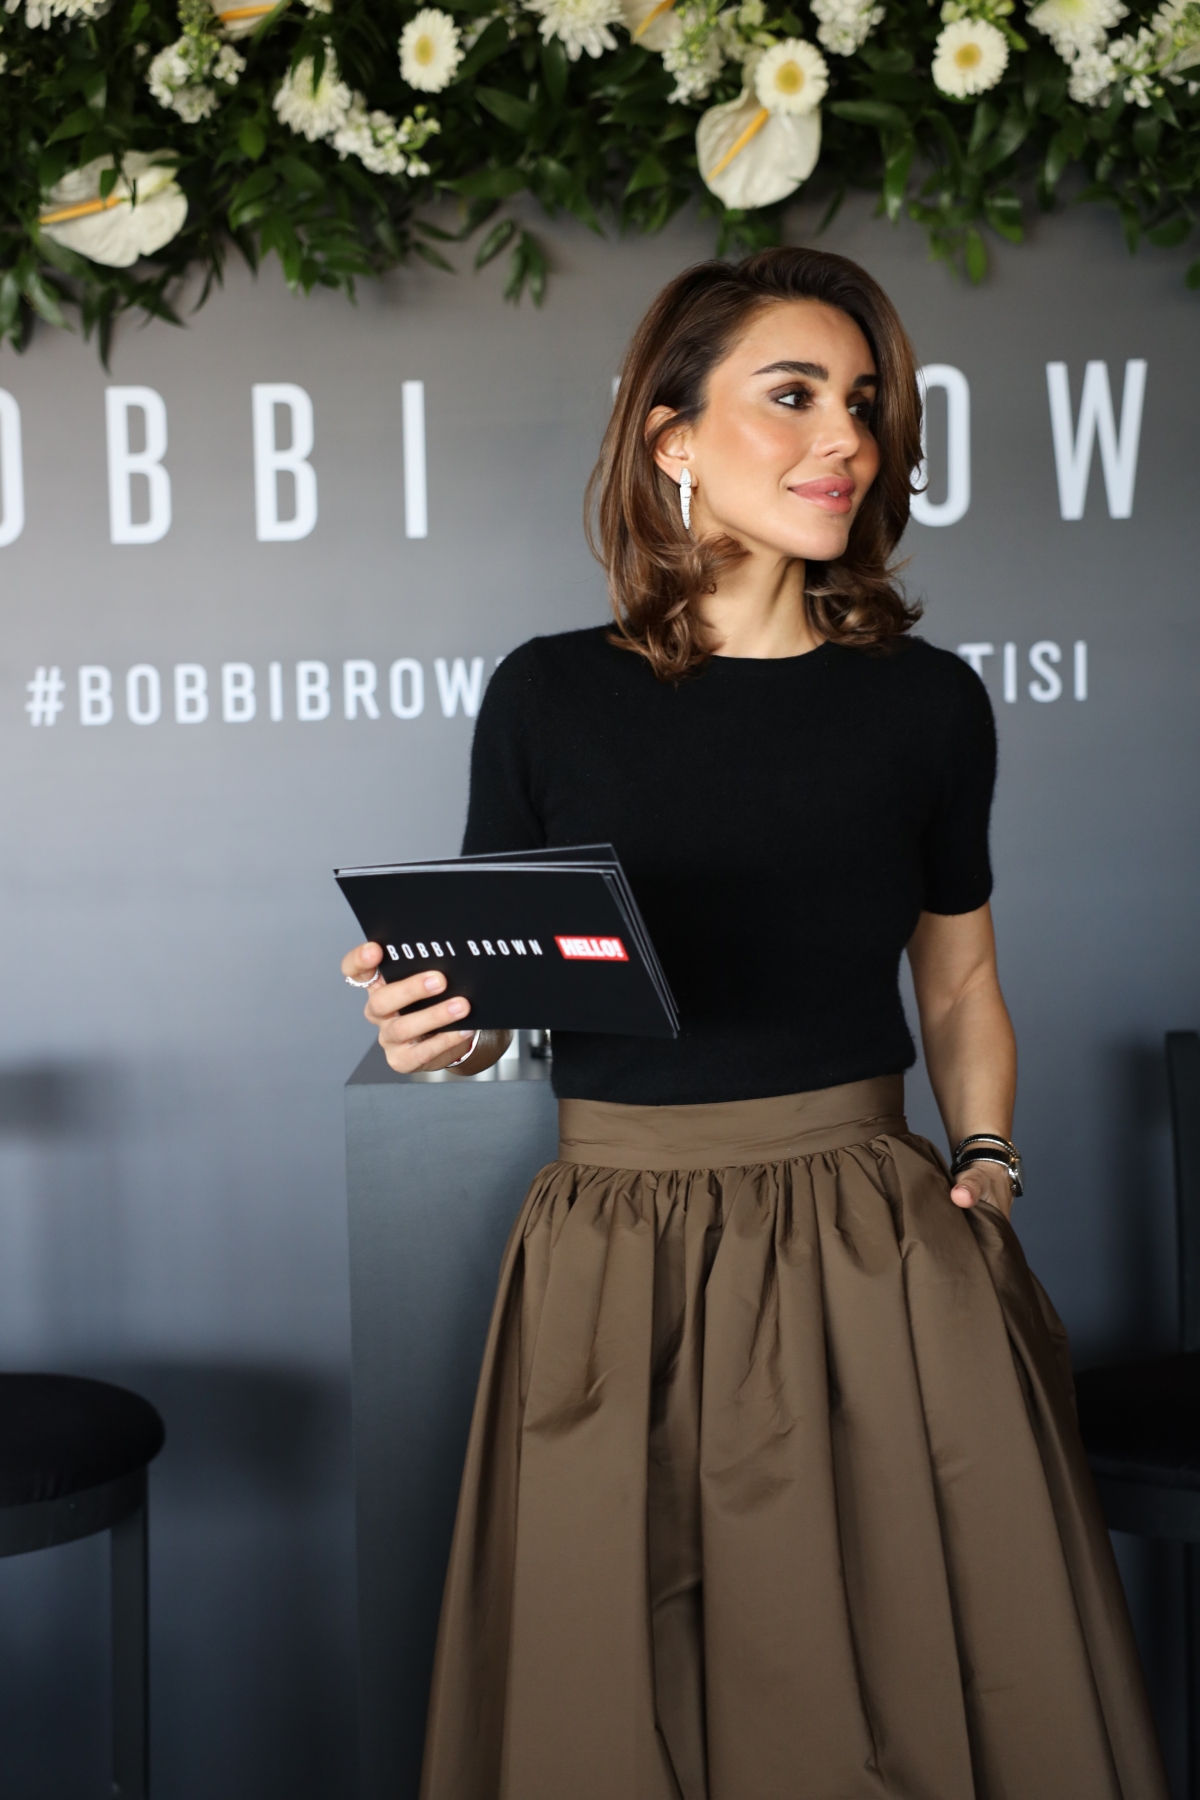 Bobbi Brown, Nur Bilen Yavuzer ile Çok Özel Bir Yeni Yıl Etkinliği Gerçekleştirdi